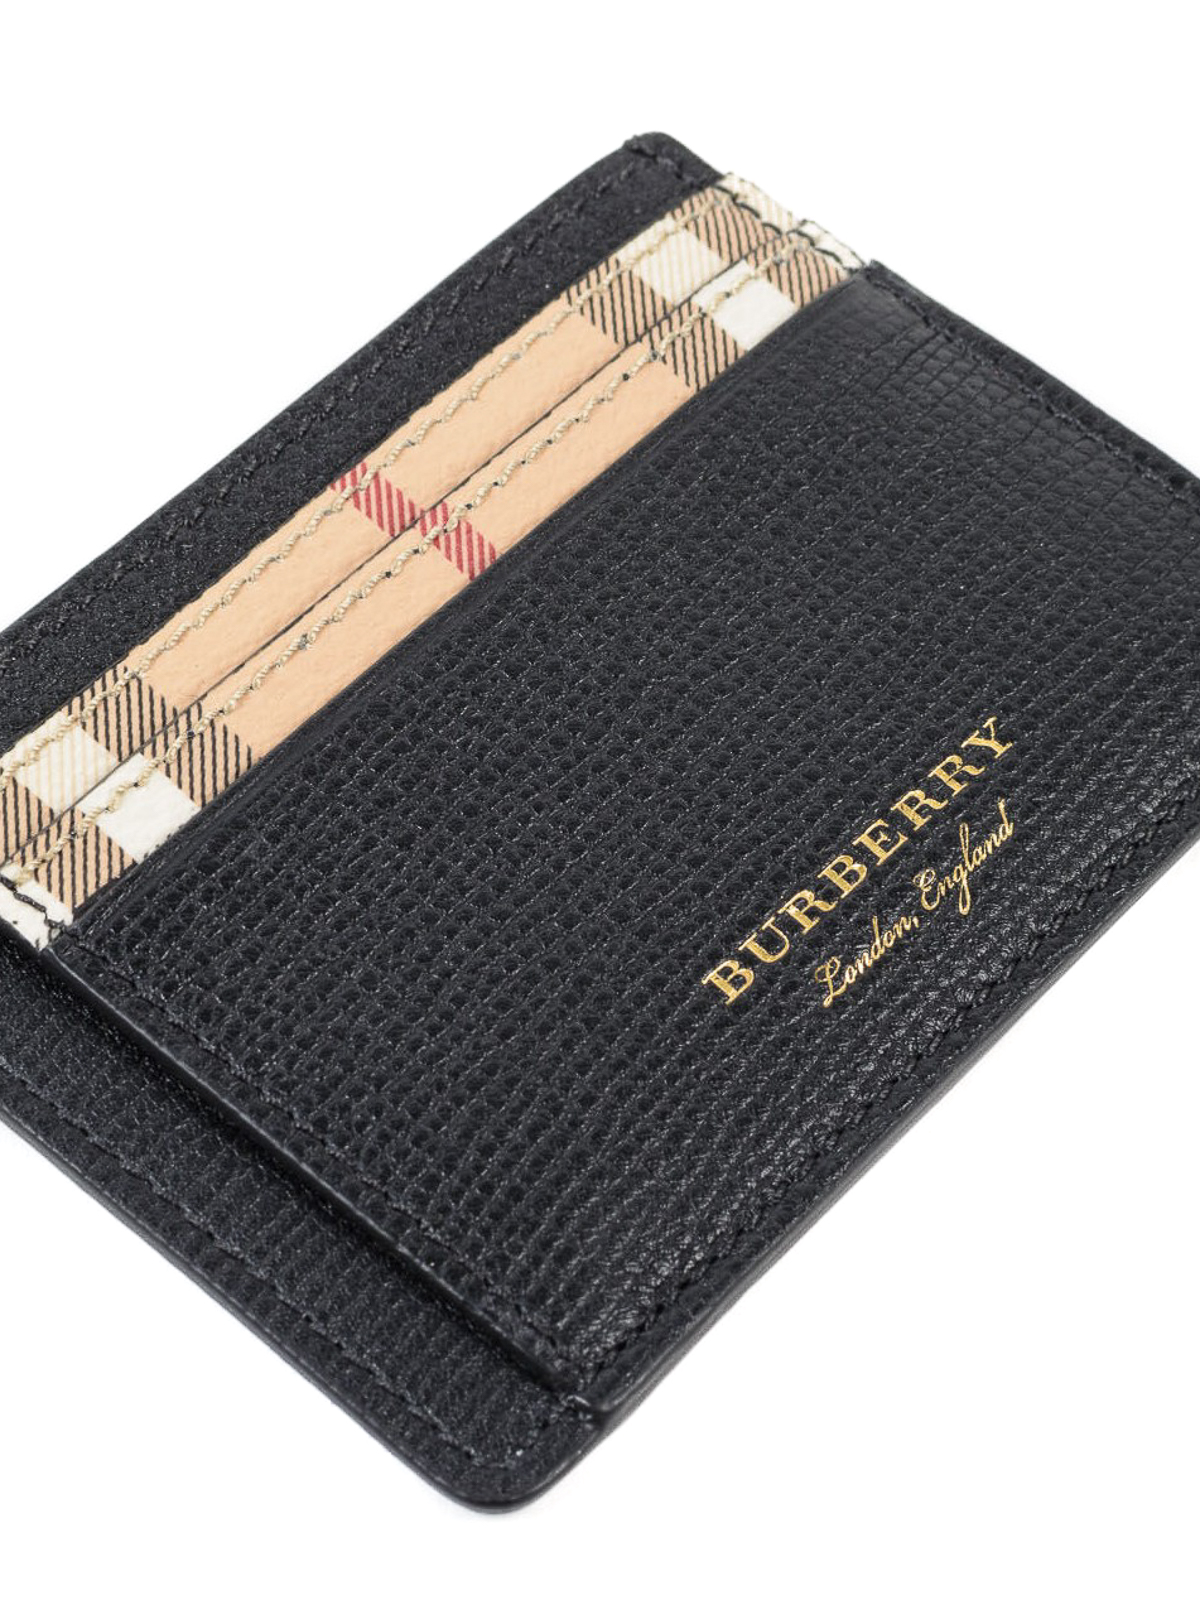 Men's Burberry Designer Wallets & Card Cases